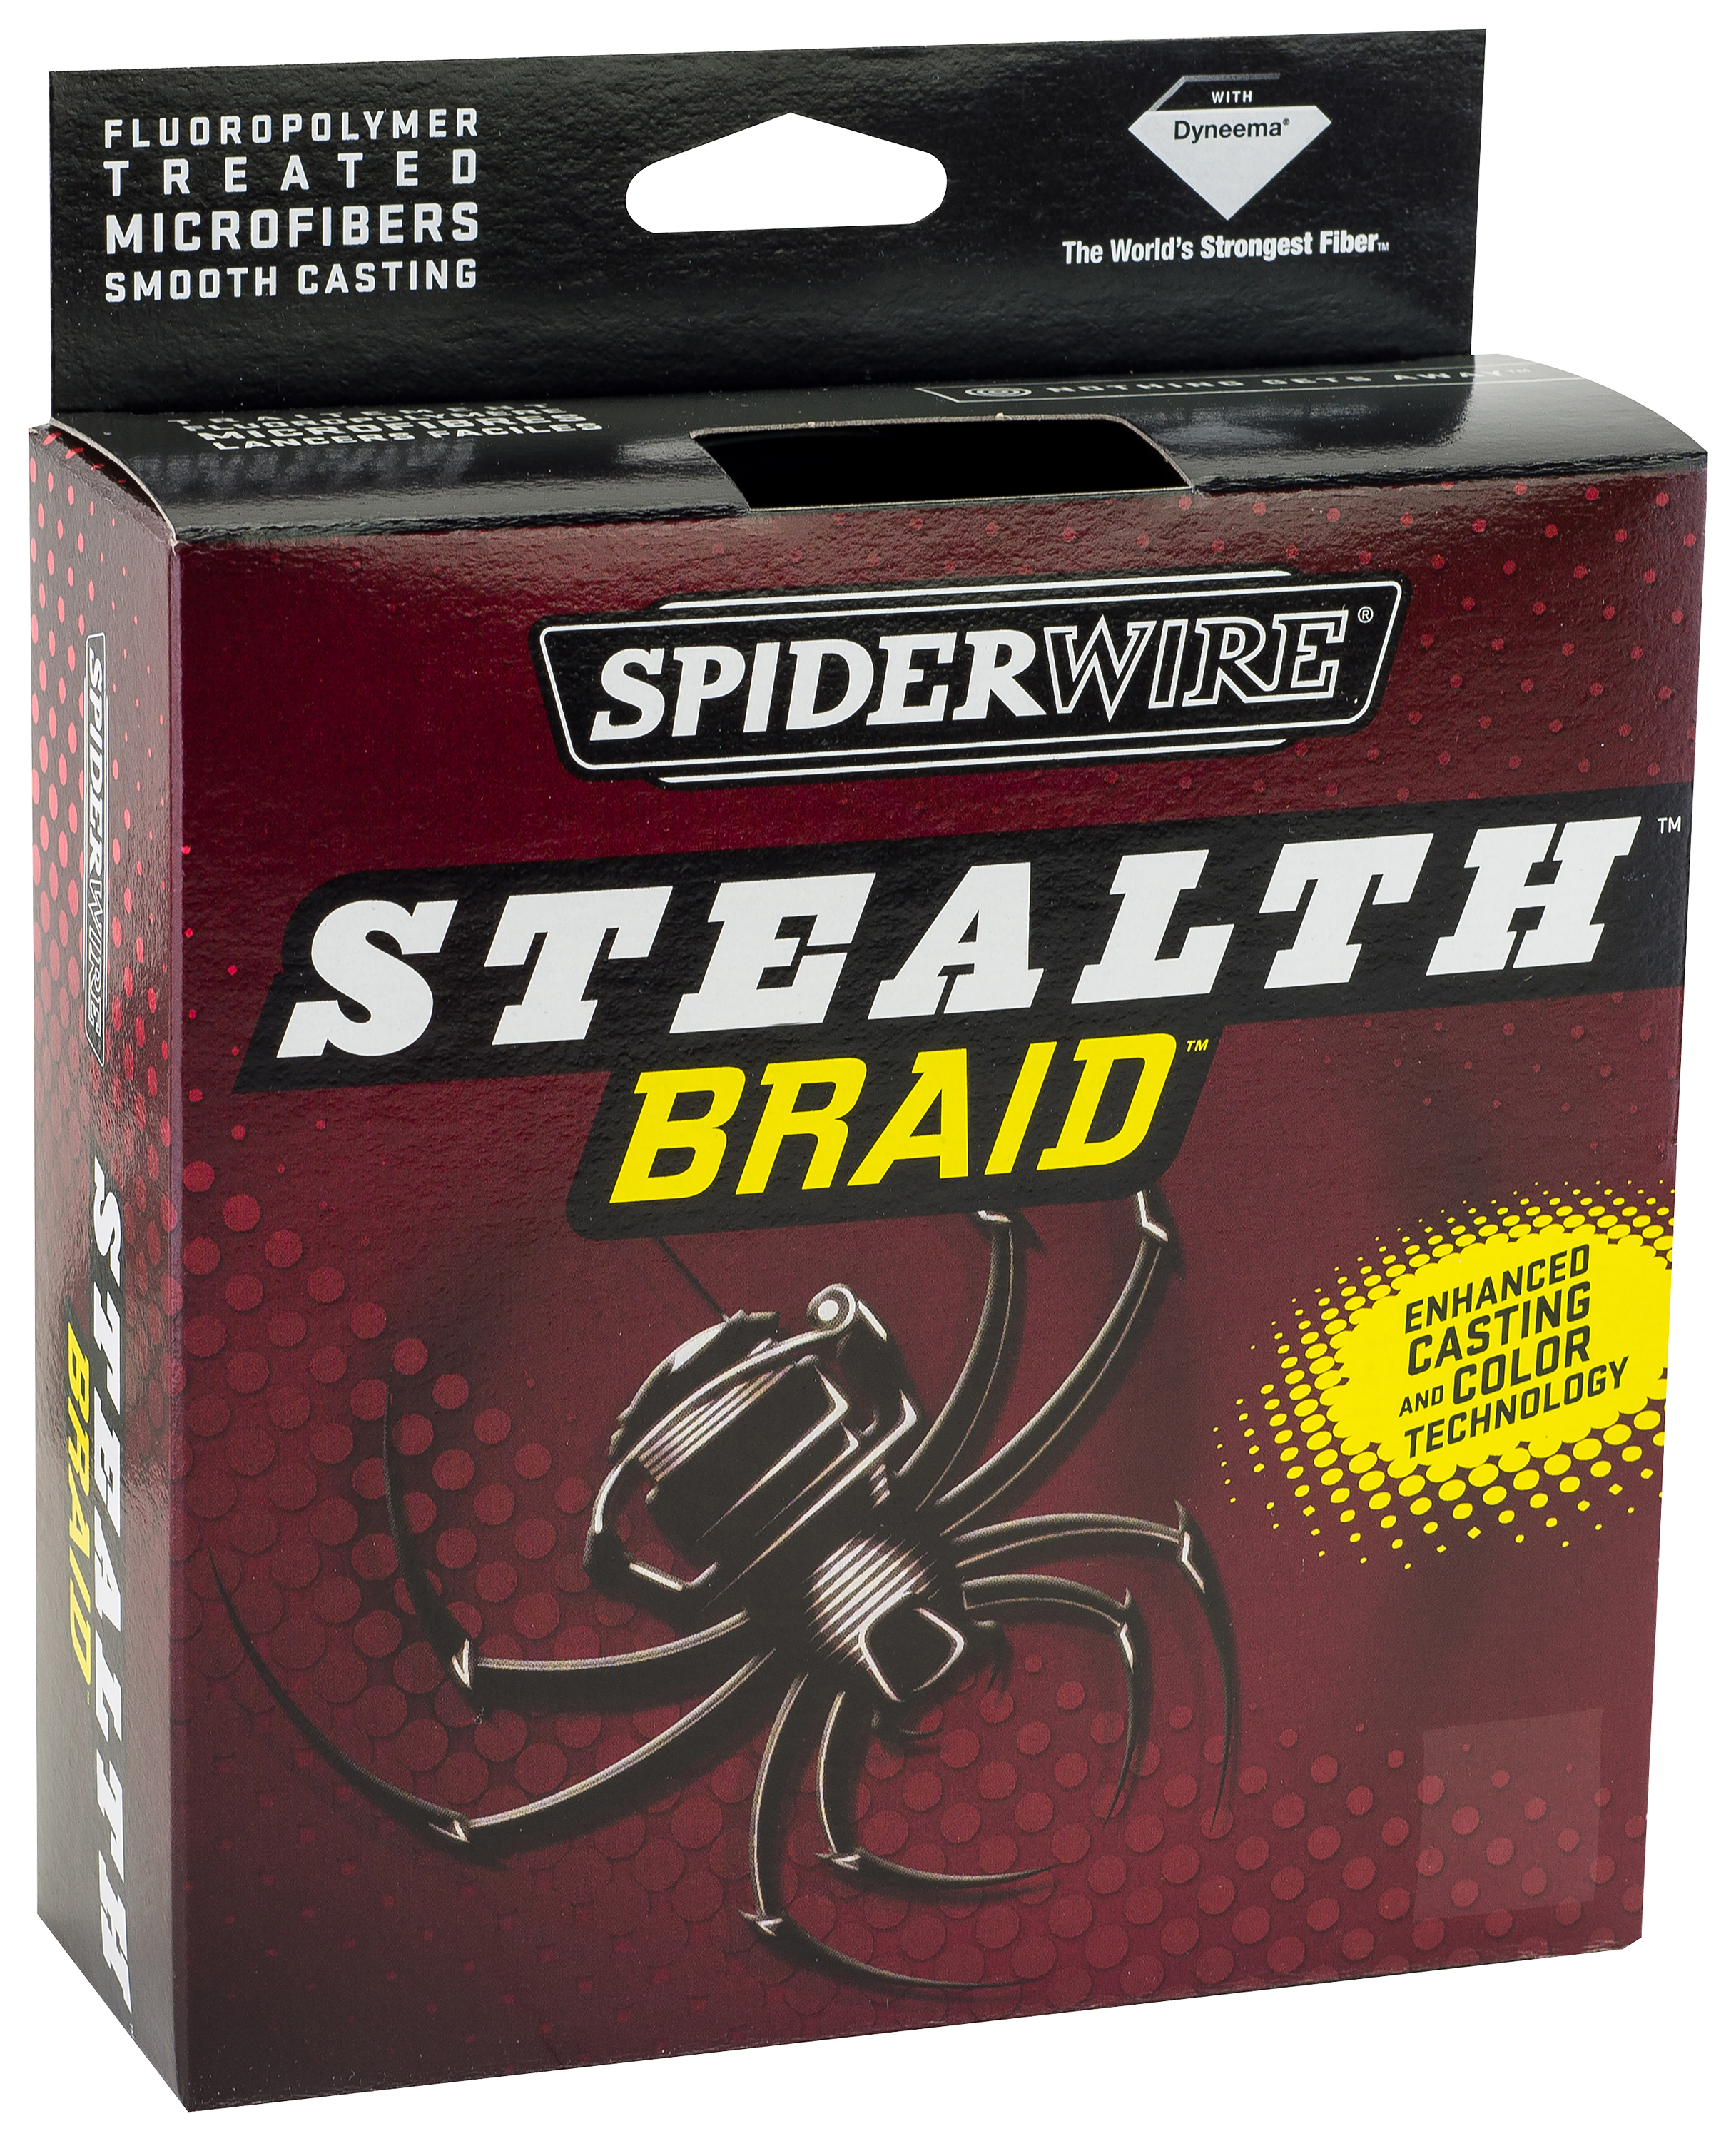 Spiderwire Stealth Braid Fishing Line